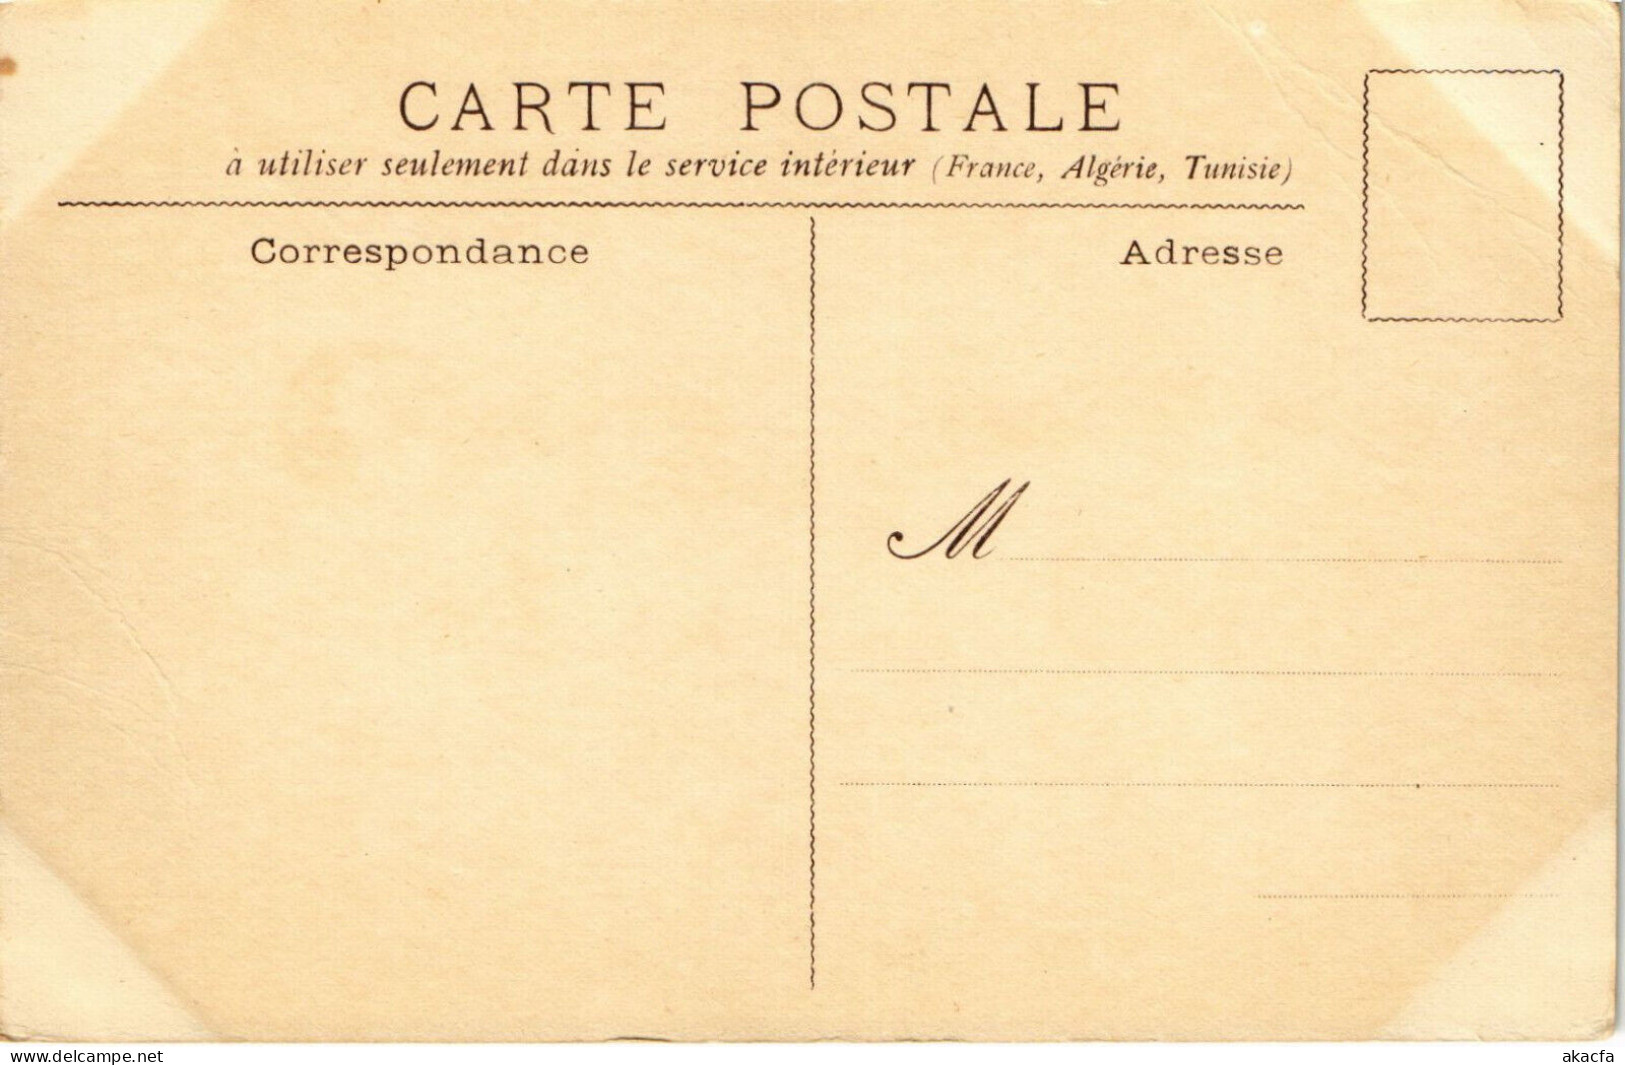 PC ARTIST SIGNED, L. VALLET, LE MARCHÉ, Vintage Postcard (b51369) - Vallet, L.